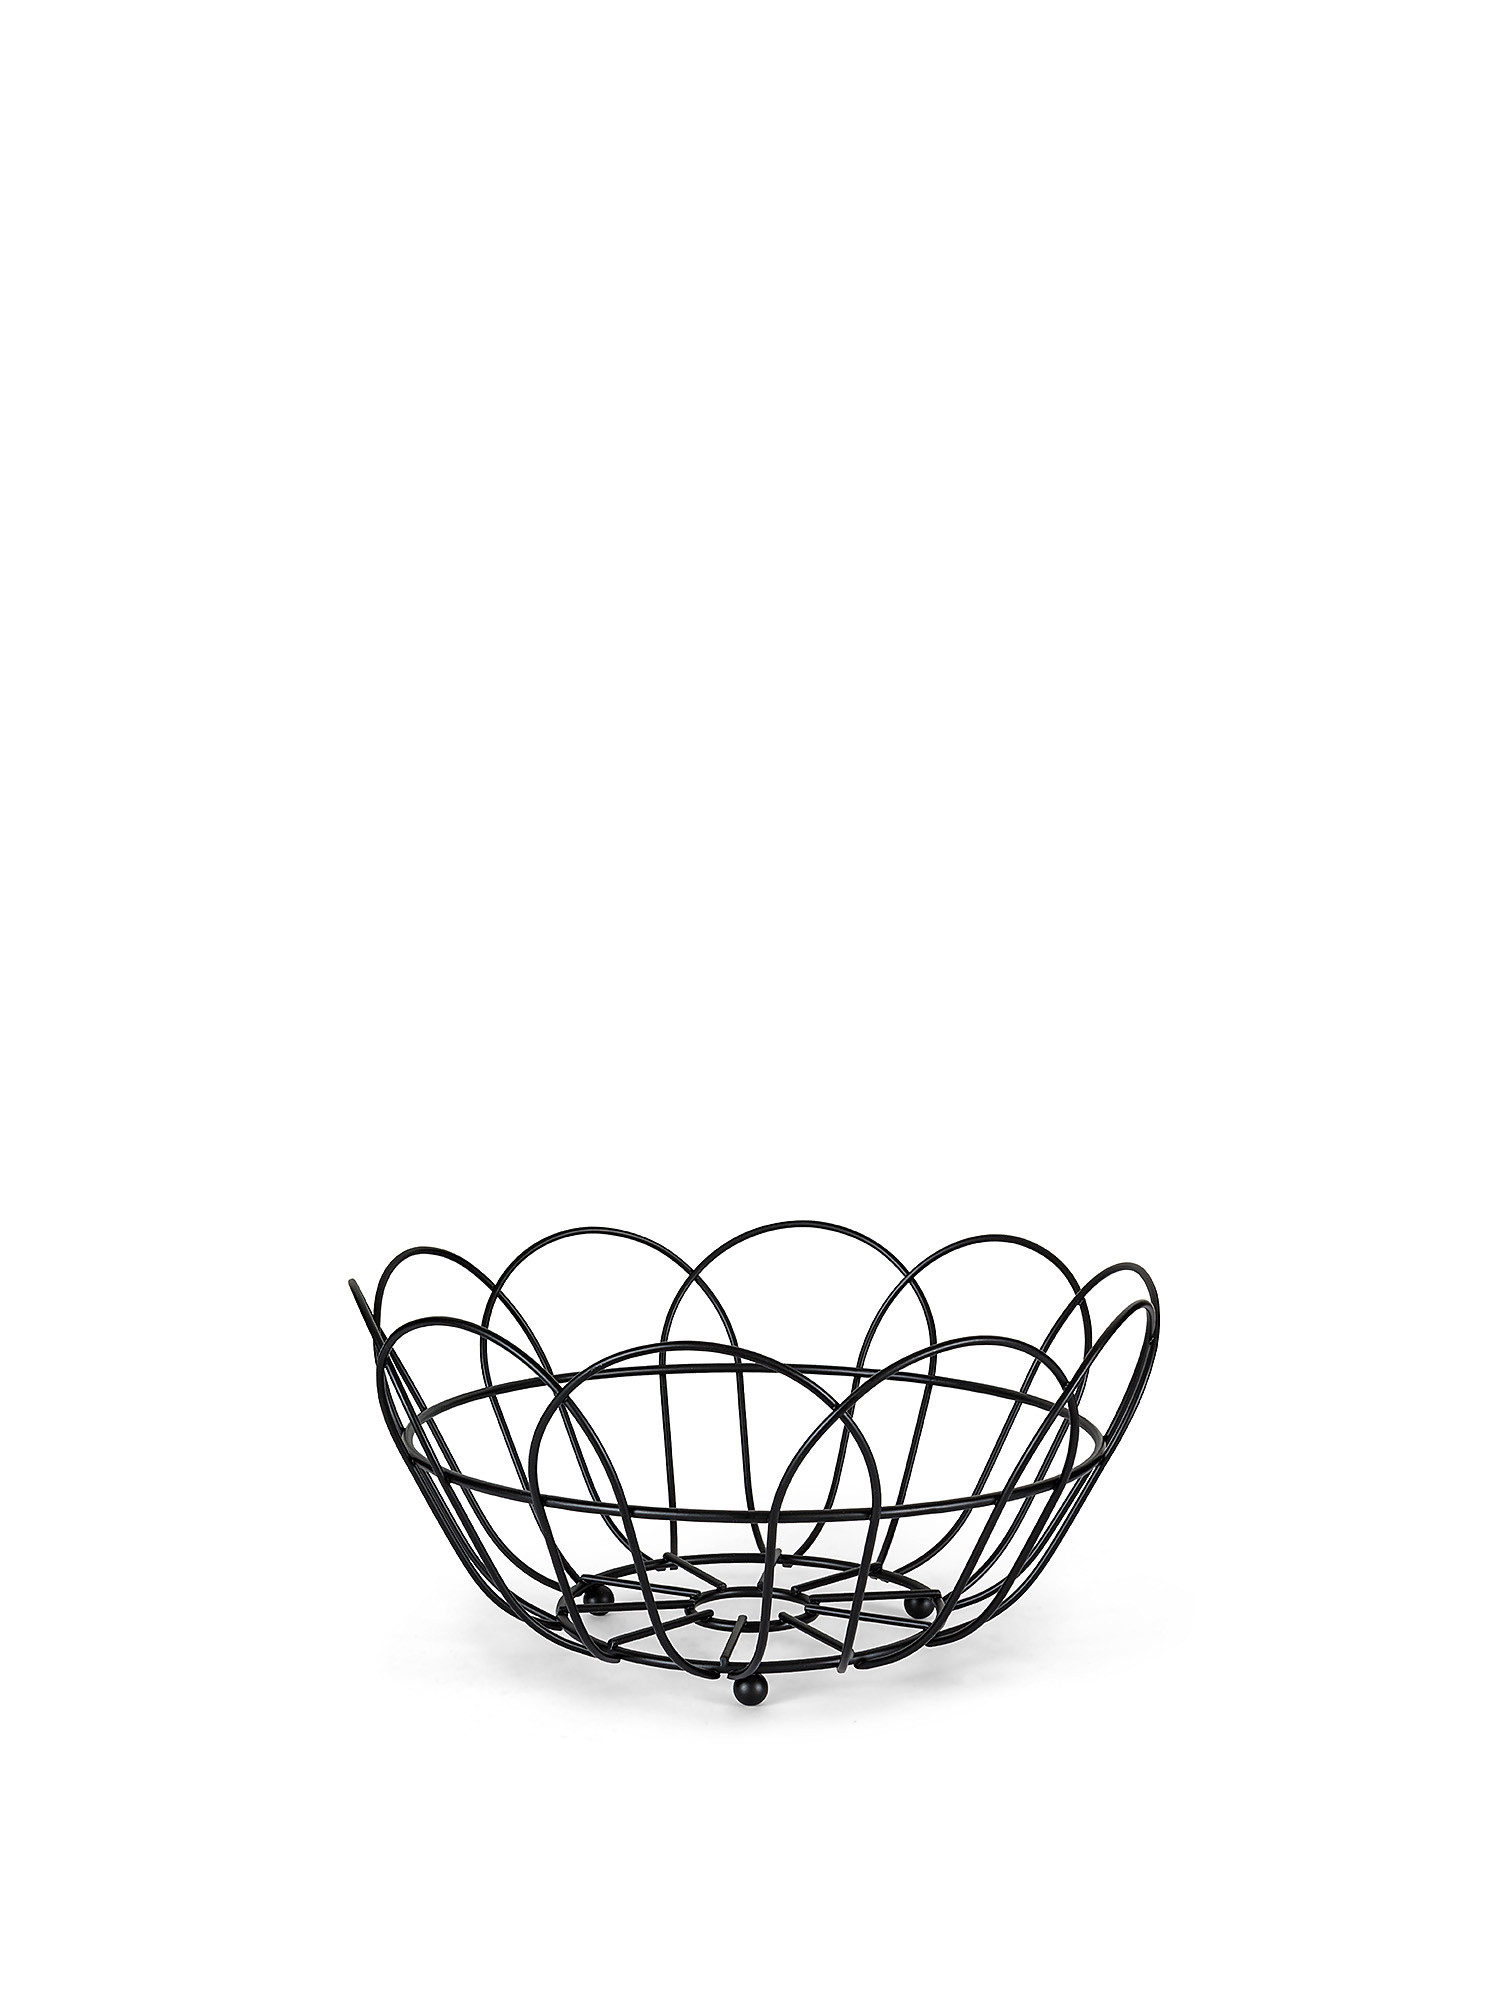 Fruit basket black thread, Black, large image number 0